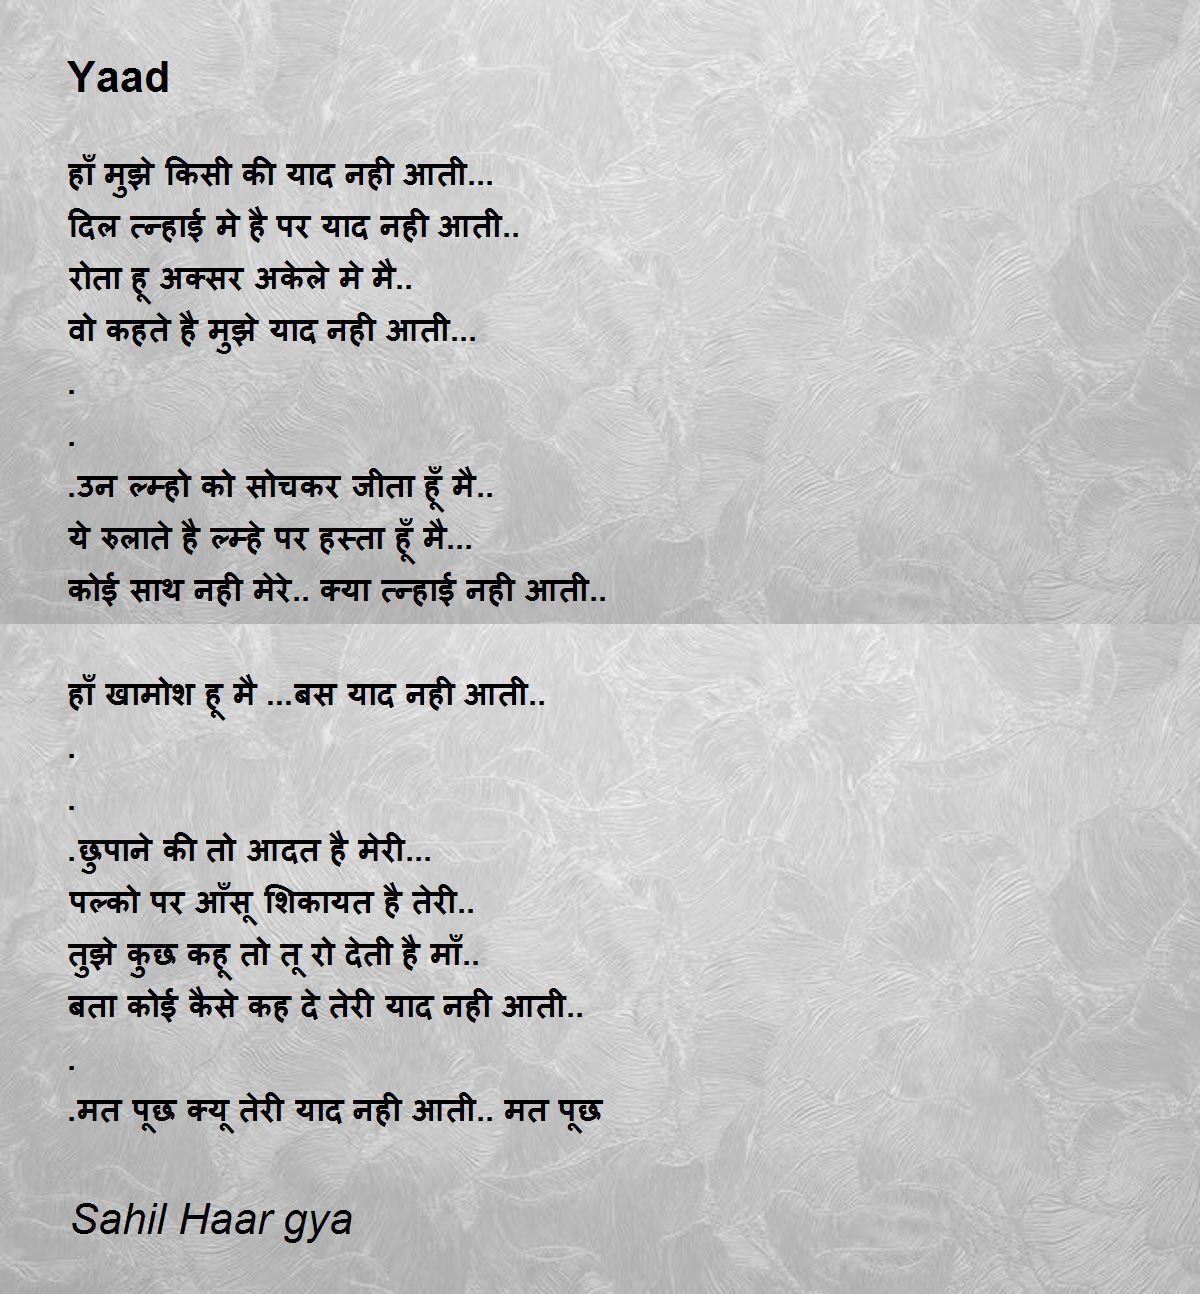 Yaad - Yaad Poem by Sahil Haar gya